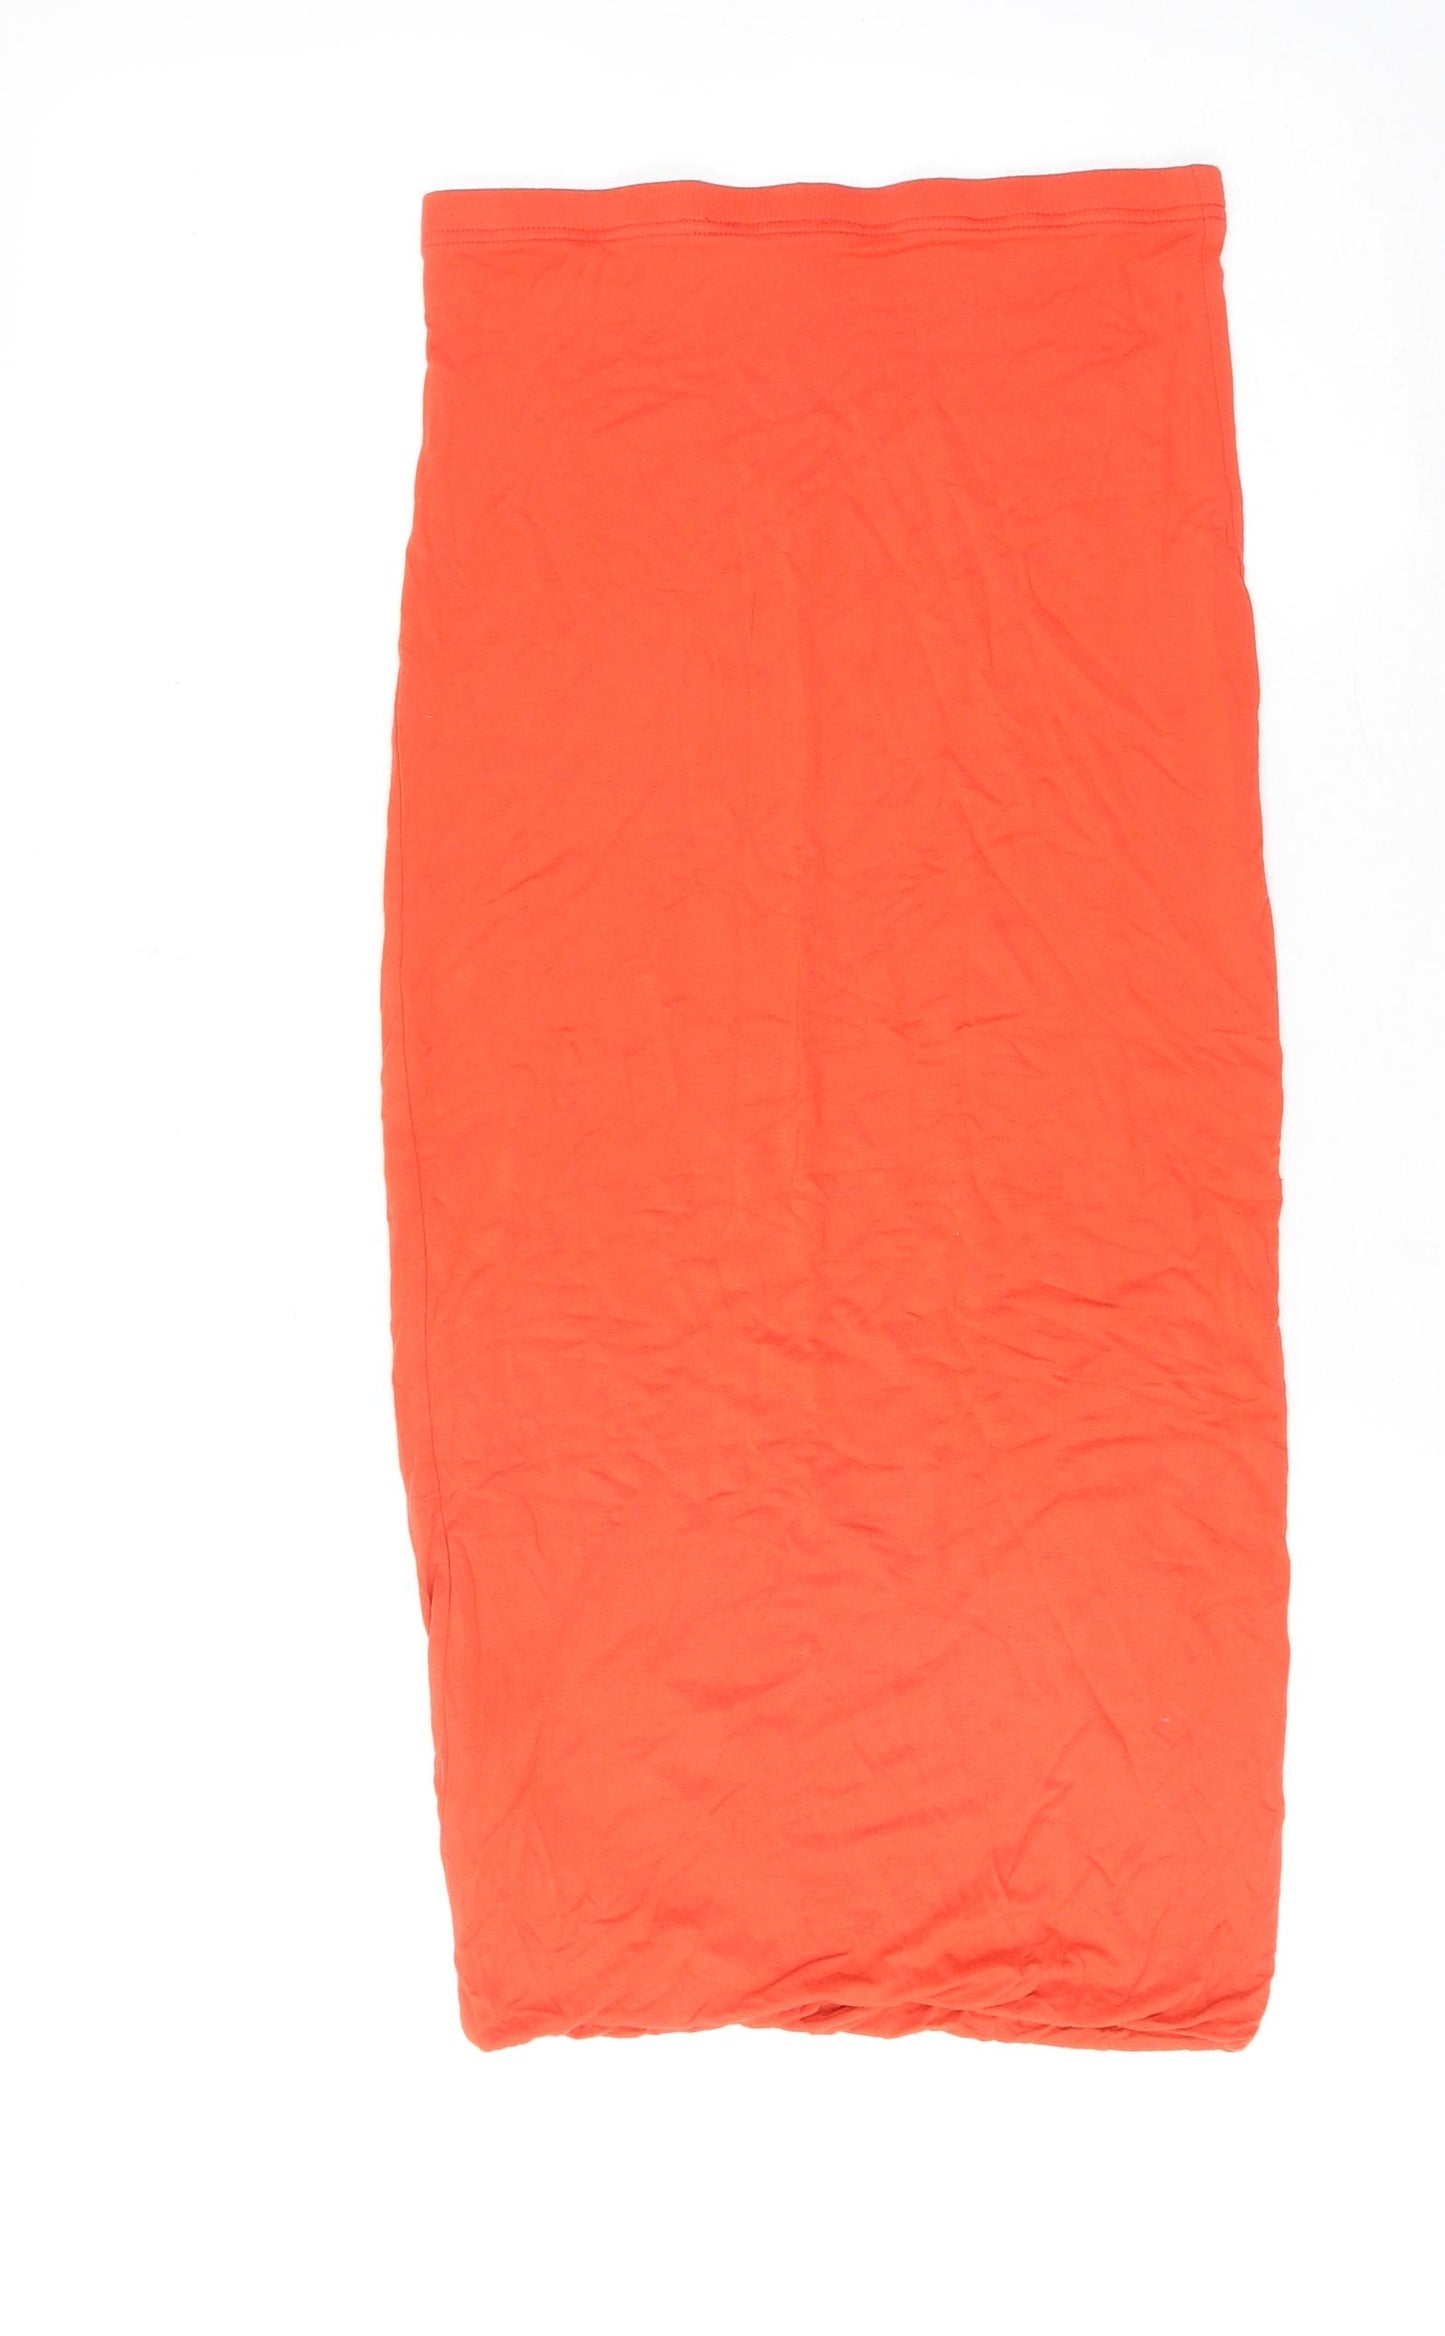 Topshop Womens Orange Viscose Bandage Skirt Size 10